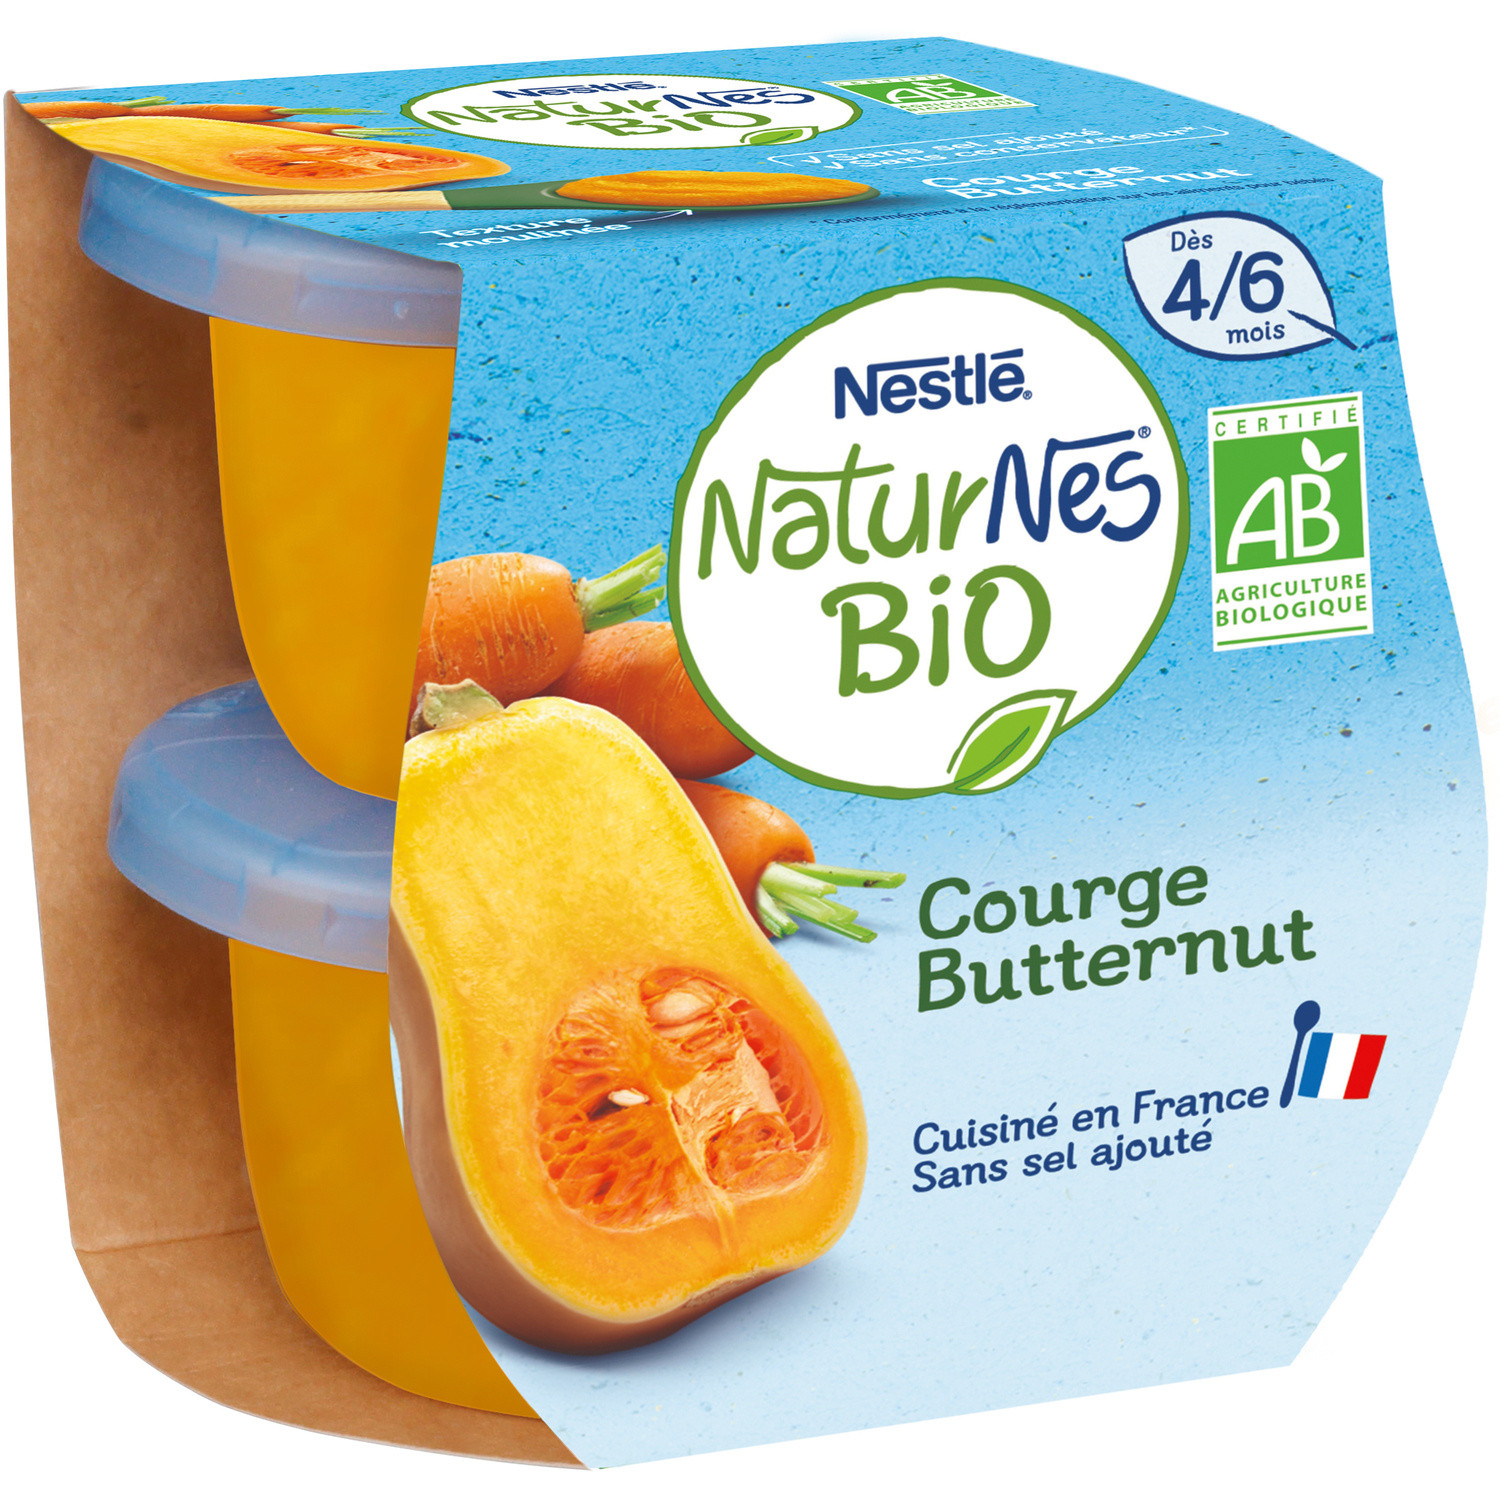 Nestle Naturnes Bio Courge Butternut Des 4 Mois 2x130g Europafoodxb Acheter Des Aliments En